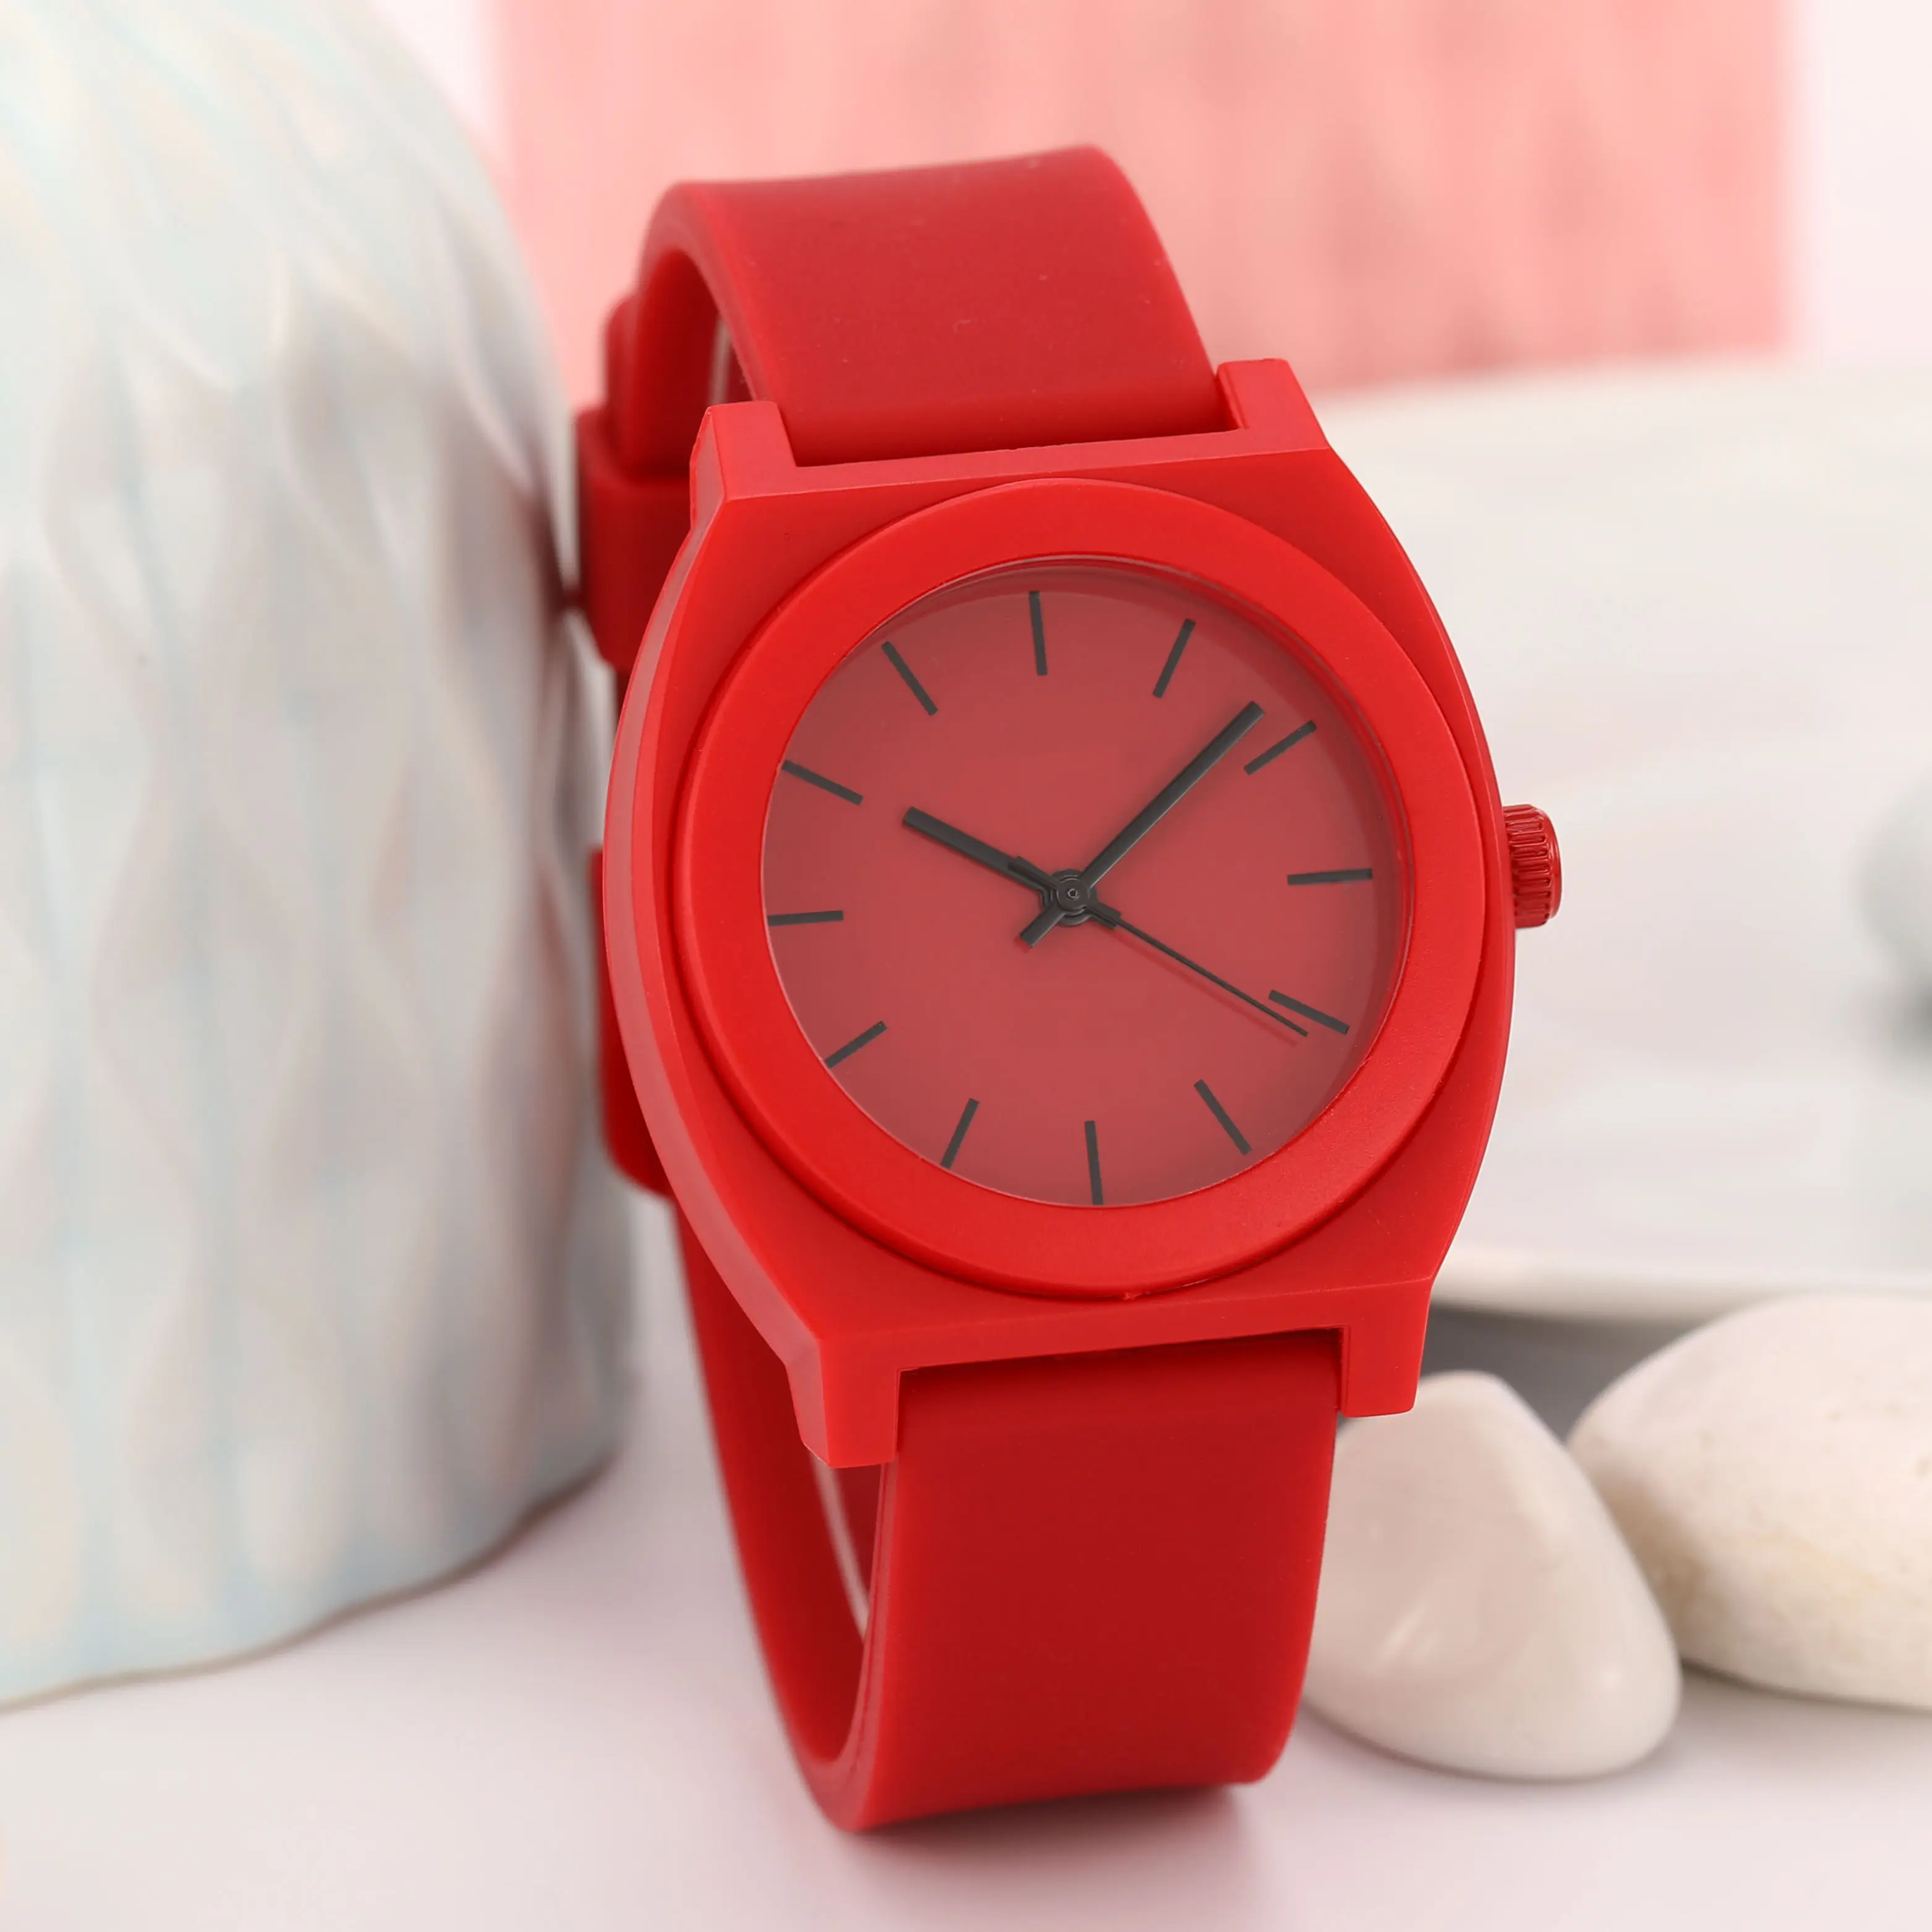 Cina produttore fasion Bling ladies quartz jelly silicon analogico impermeabile miglior orologio a colori in plastica con cinturino economico di alta qualità